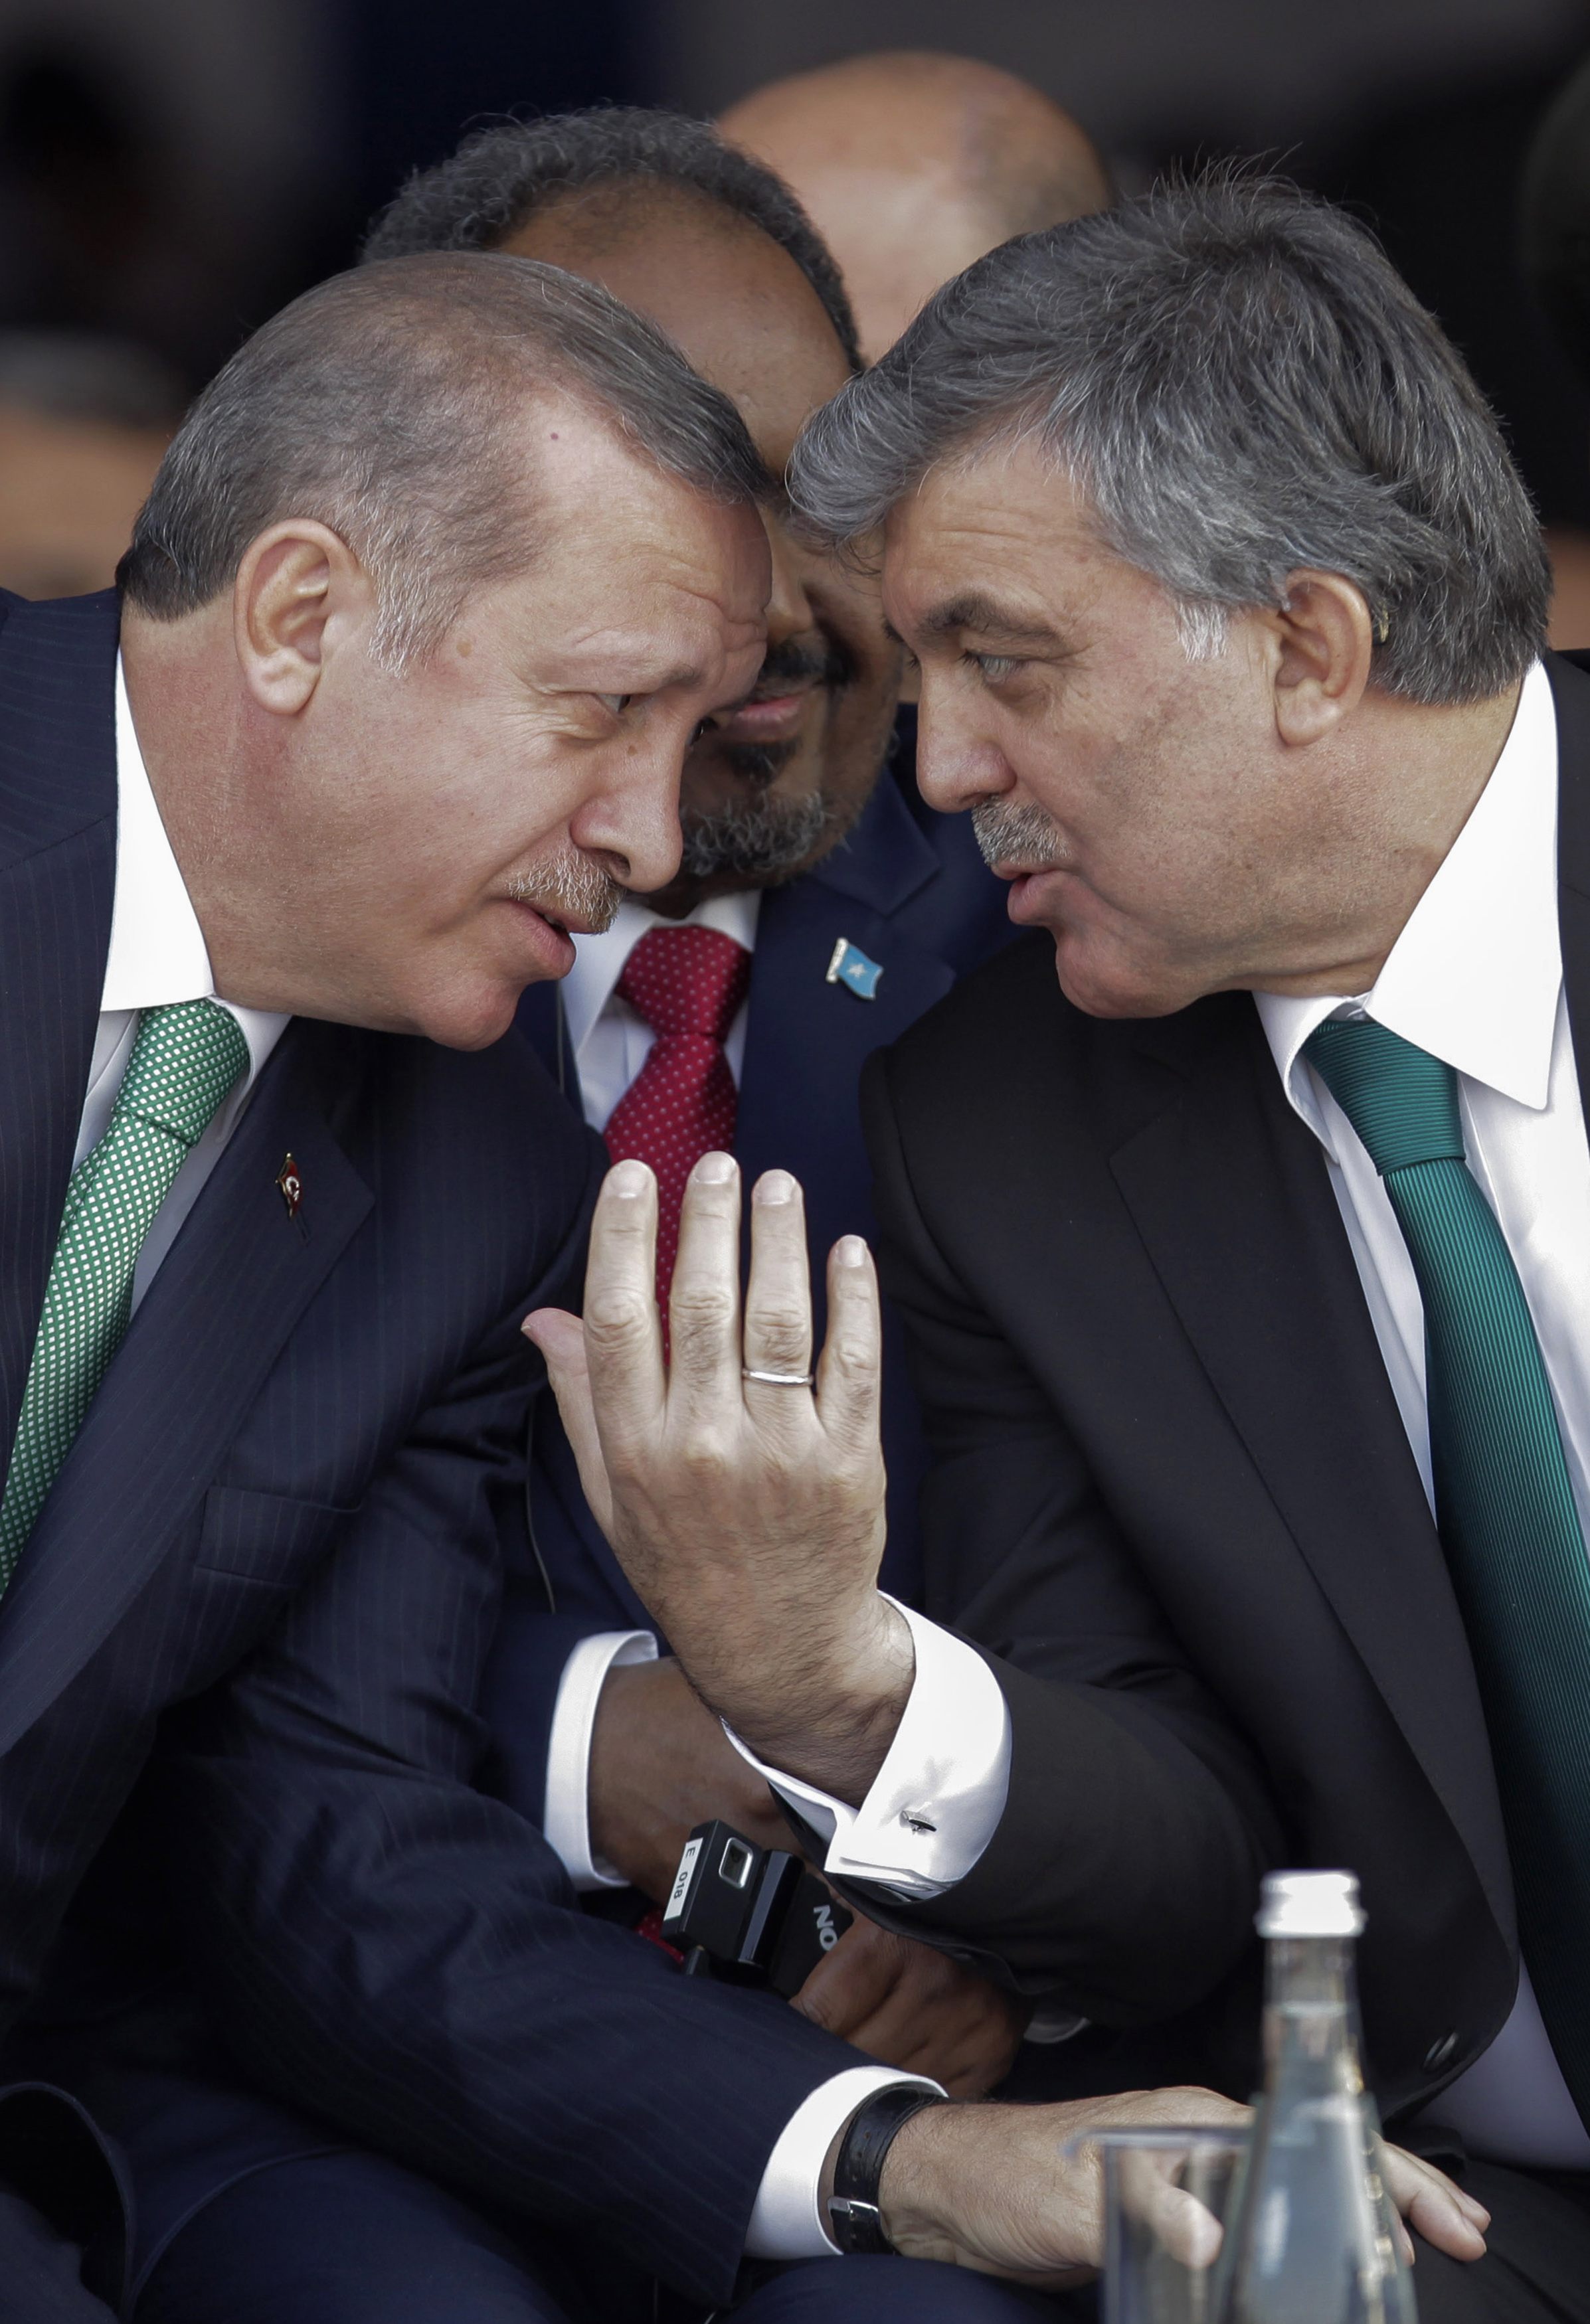 Ο Γκιούλ απορρίπτει την ανταλλαγή πολιτικών ρόλων με το Ερντογάν